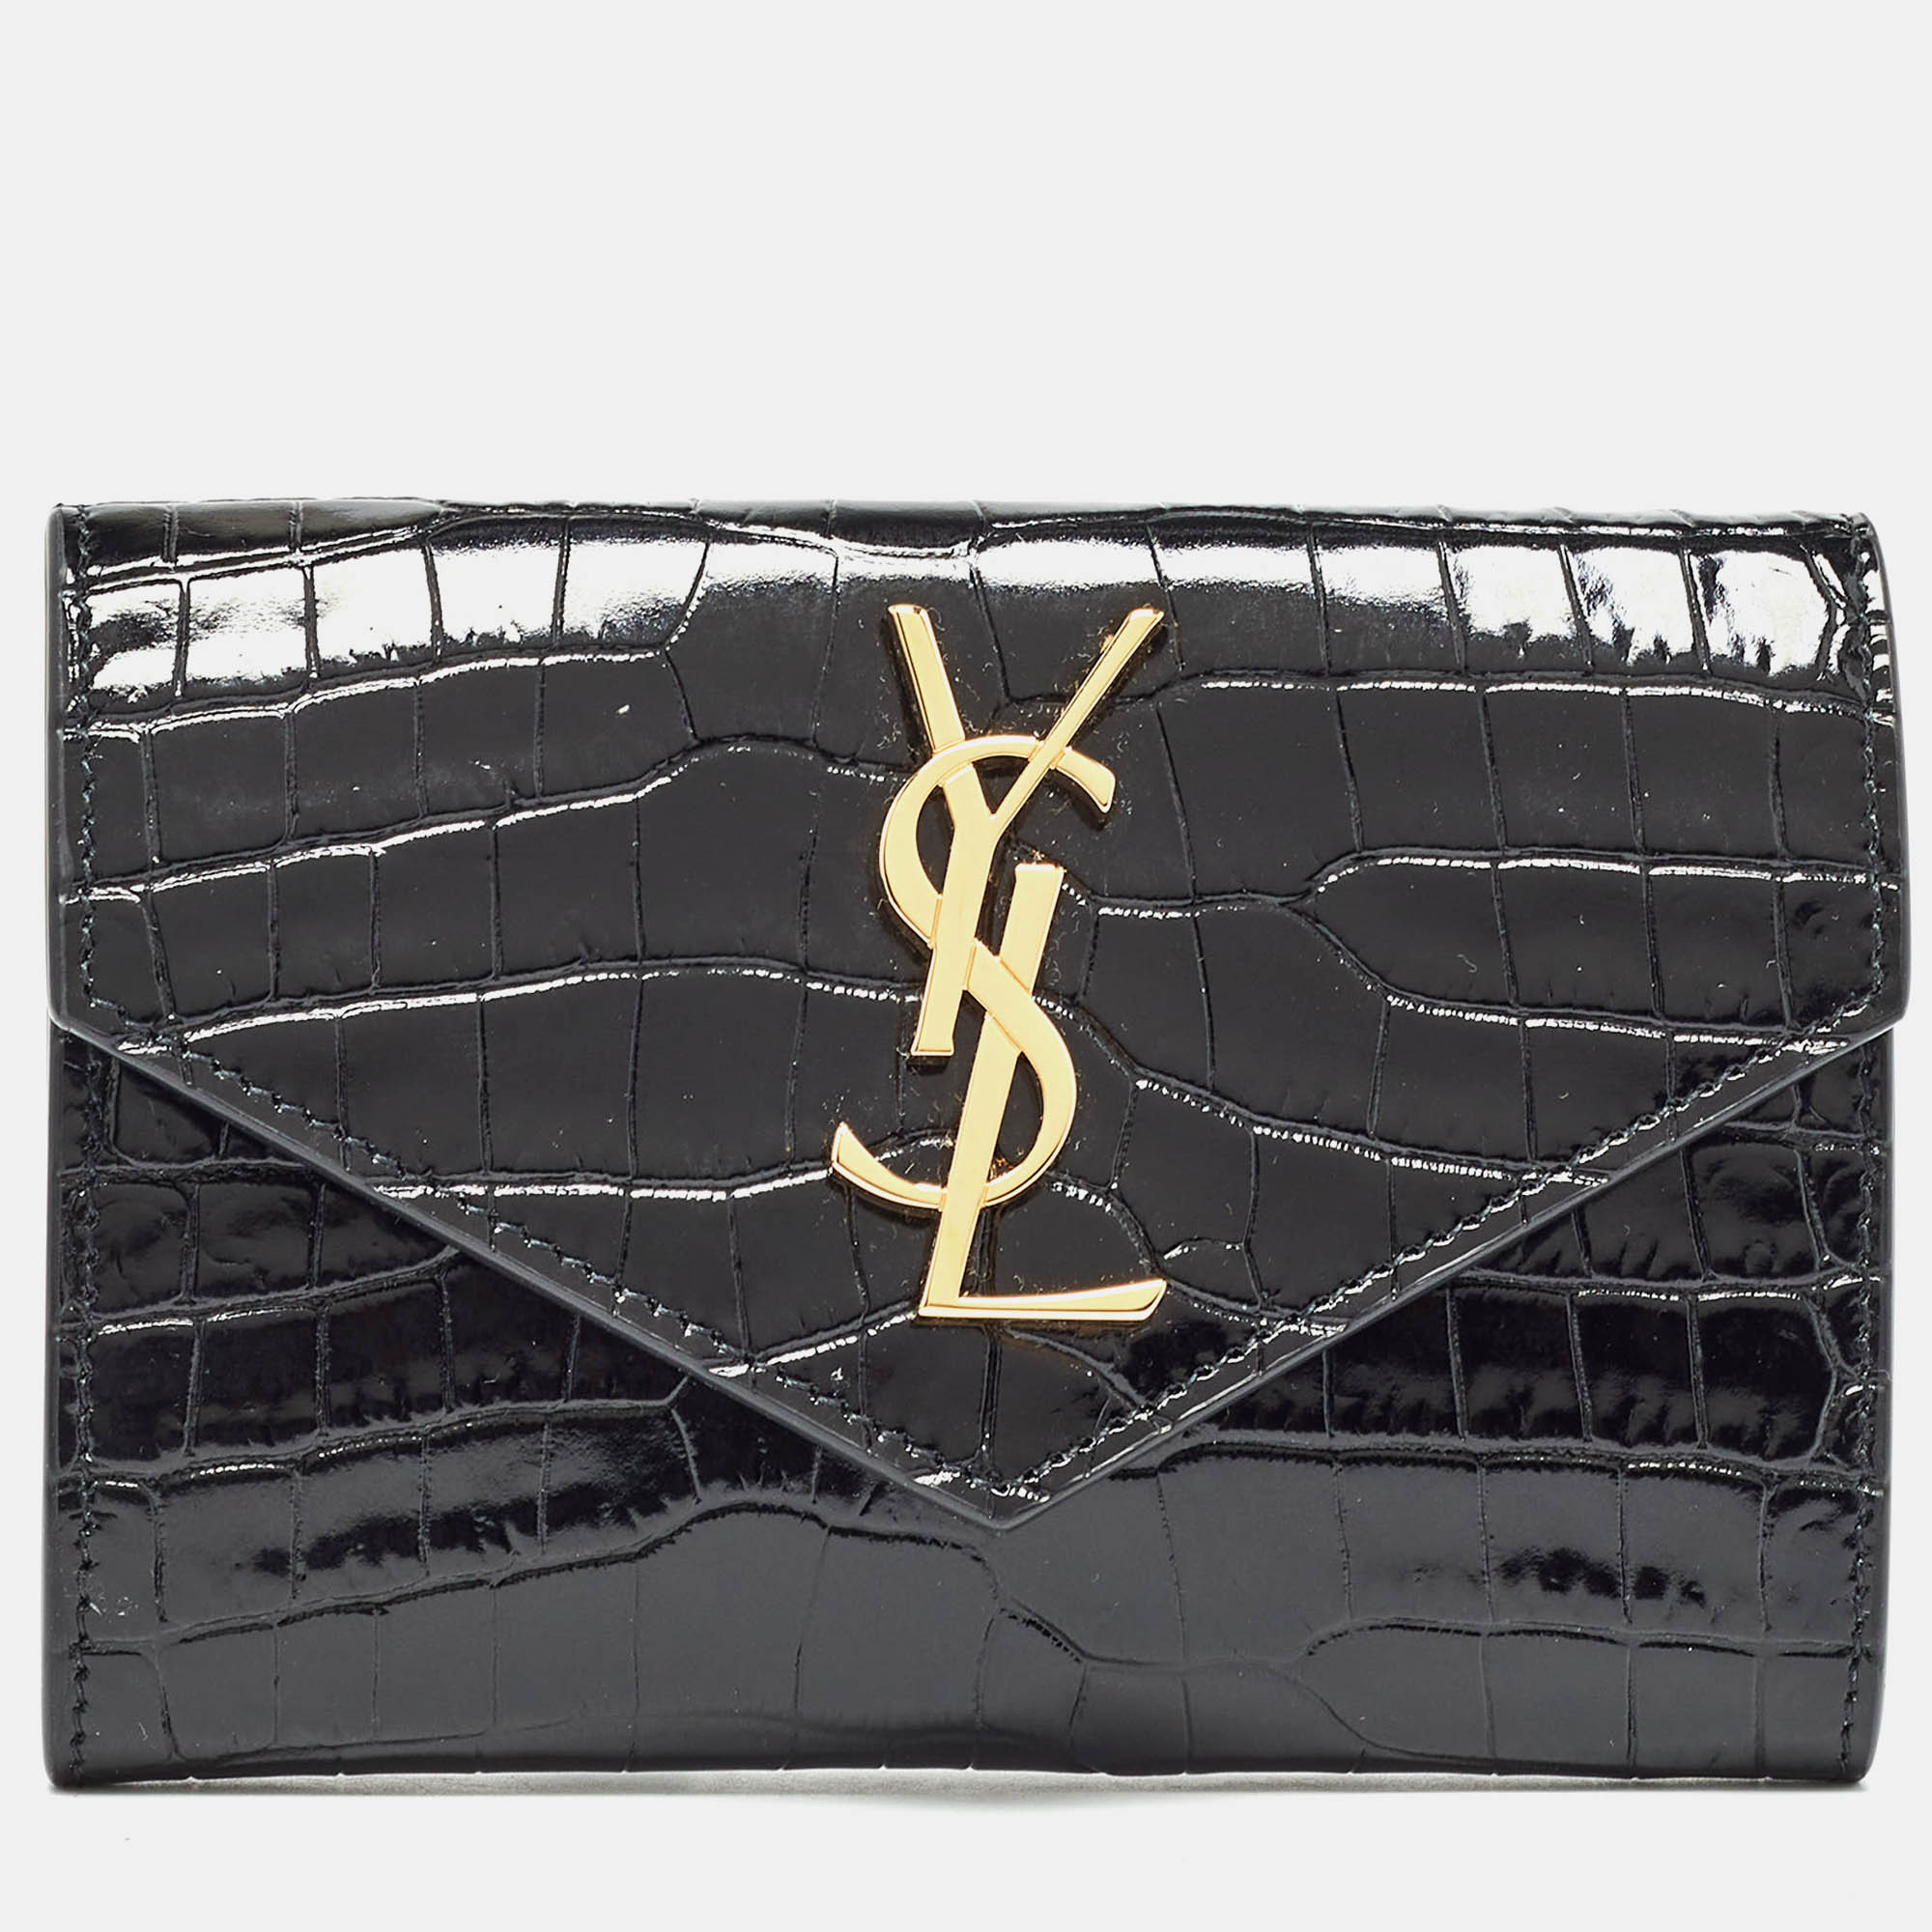 Saint laurent paris saint laurent black croc embossed leather monogram compact wallet